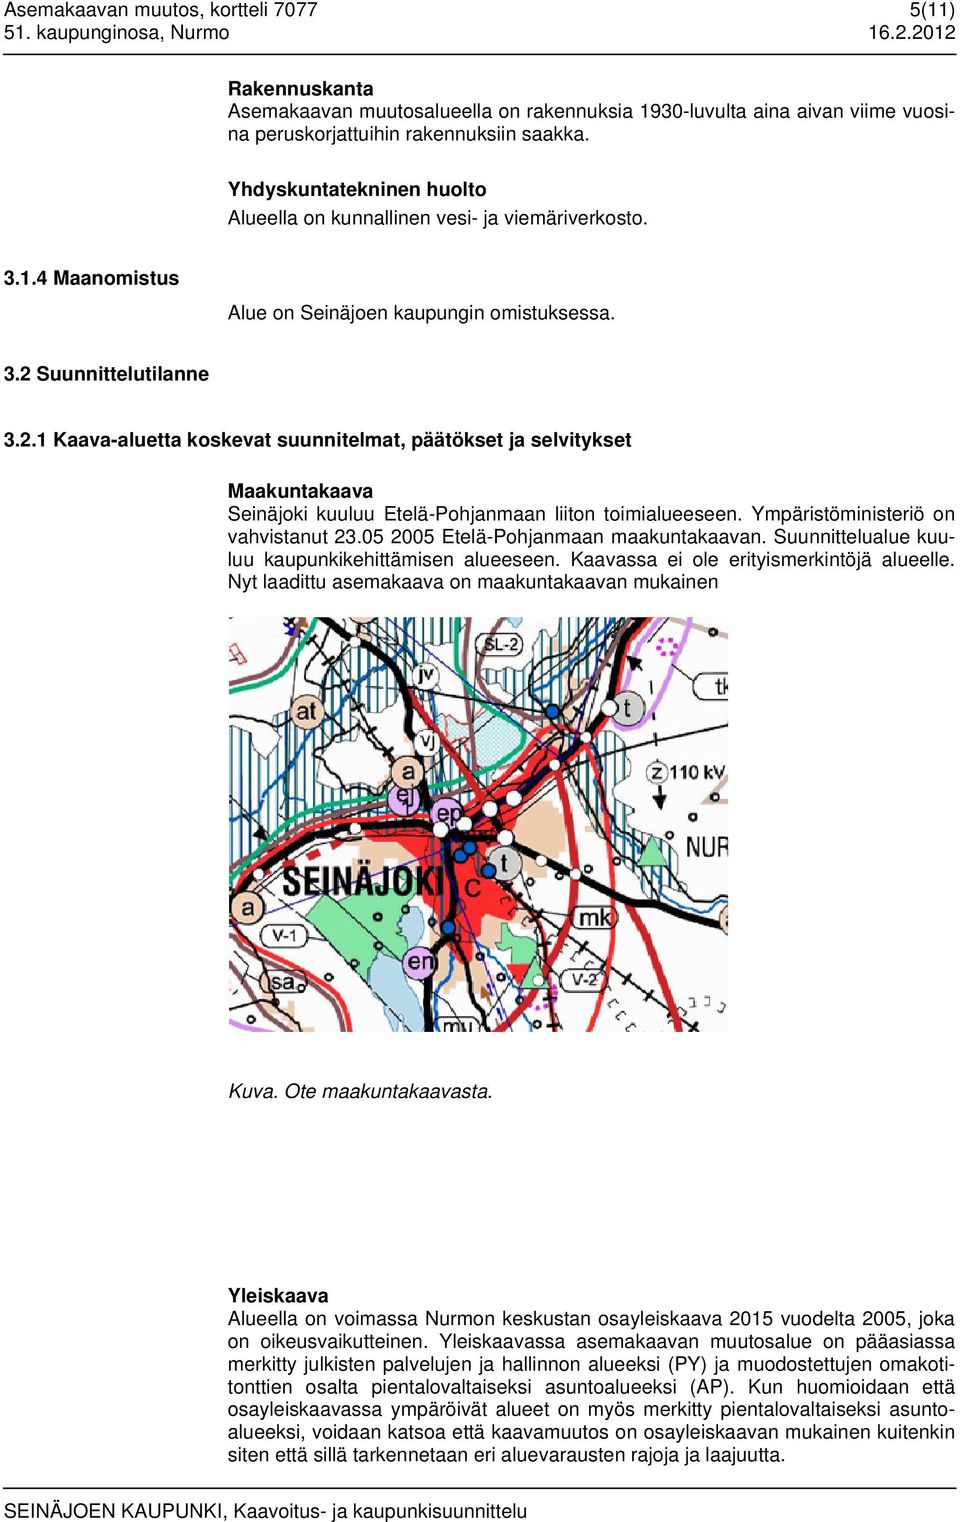 Suunnittelutilanne 3.2.1 Kaava-aluetta koskevat suunnitelmat, päätökset ja selvitykset Maakuntakaava Seinäjoki kuuluu Etelä-Pohjanmaan liiton toimialueeseen. Ympäristöministeriö on vahvistanut 23.